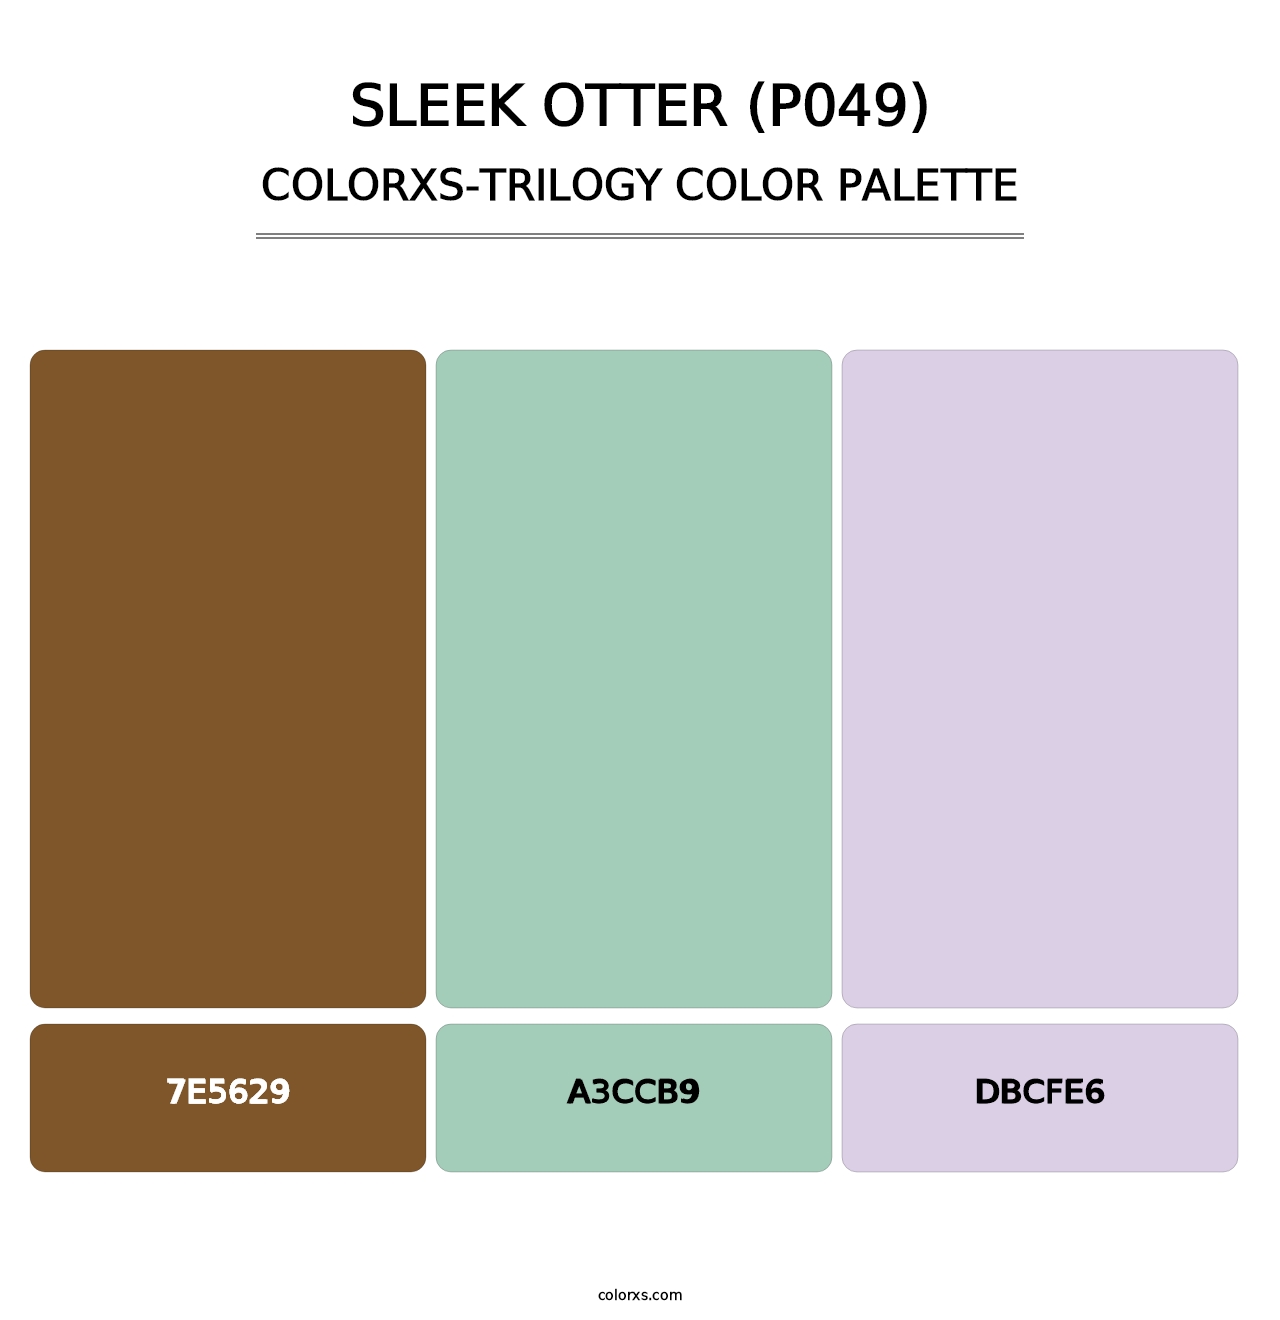 Sleek Otter (P049) - Colorxs Trilogy Palette